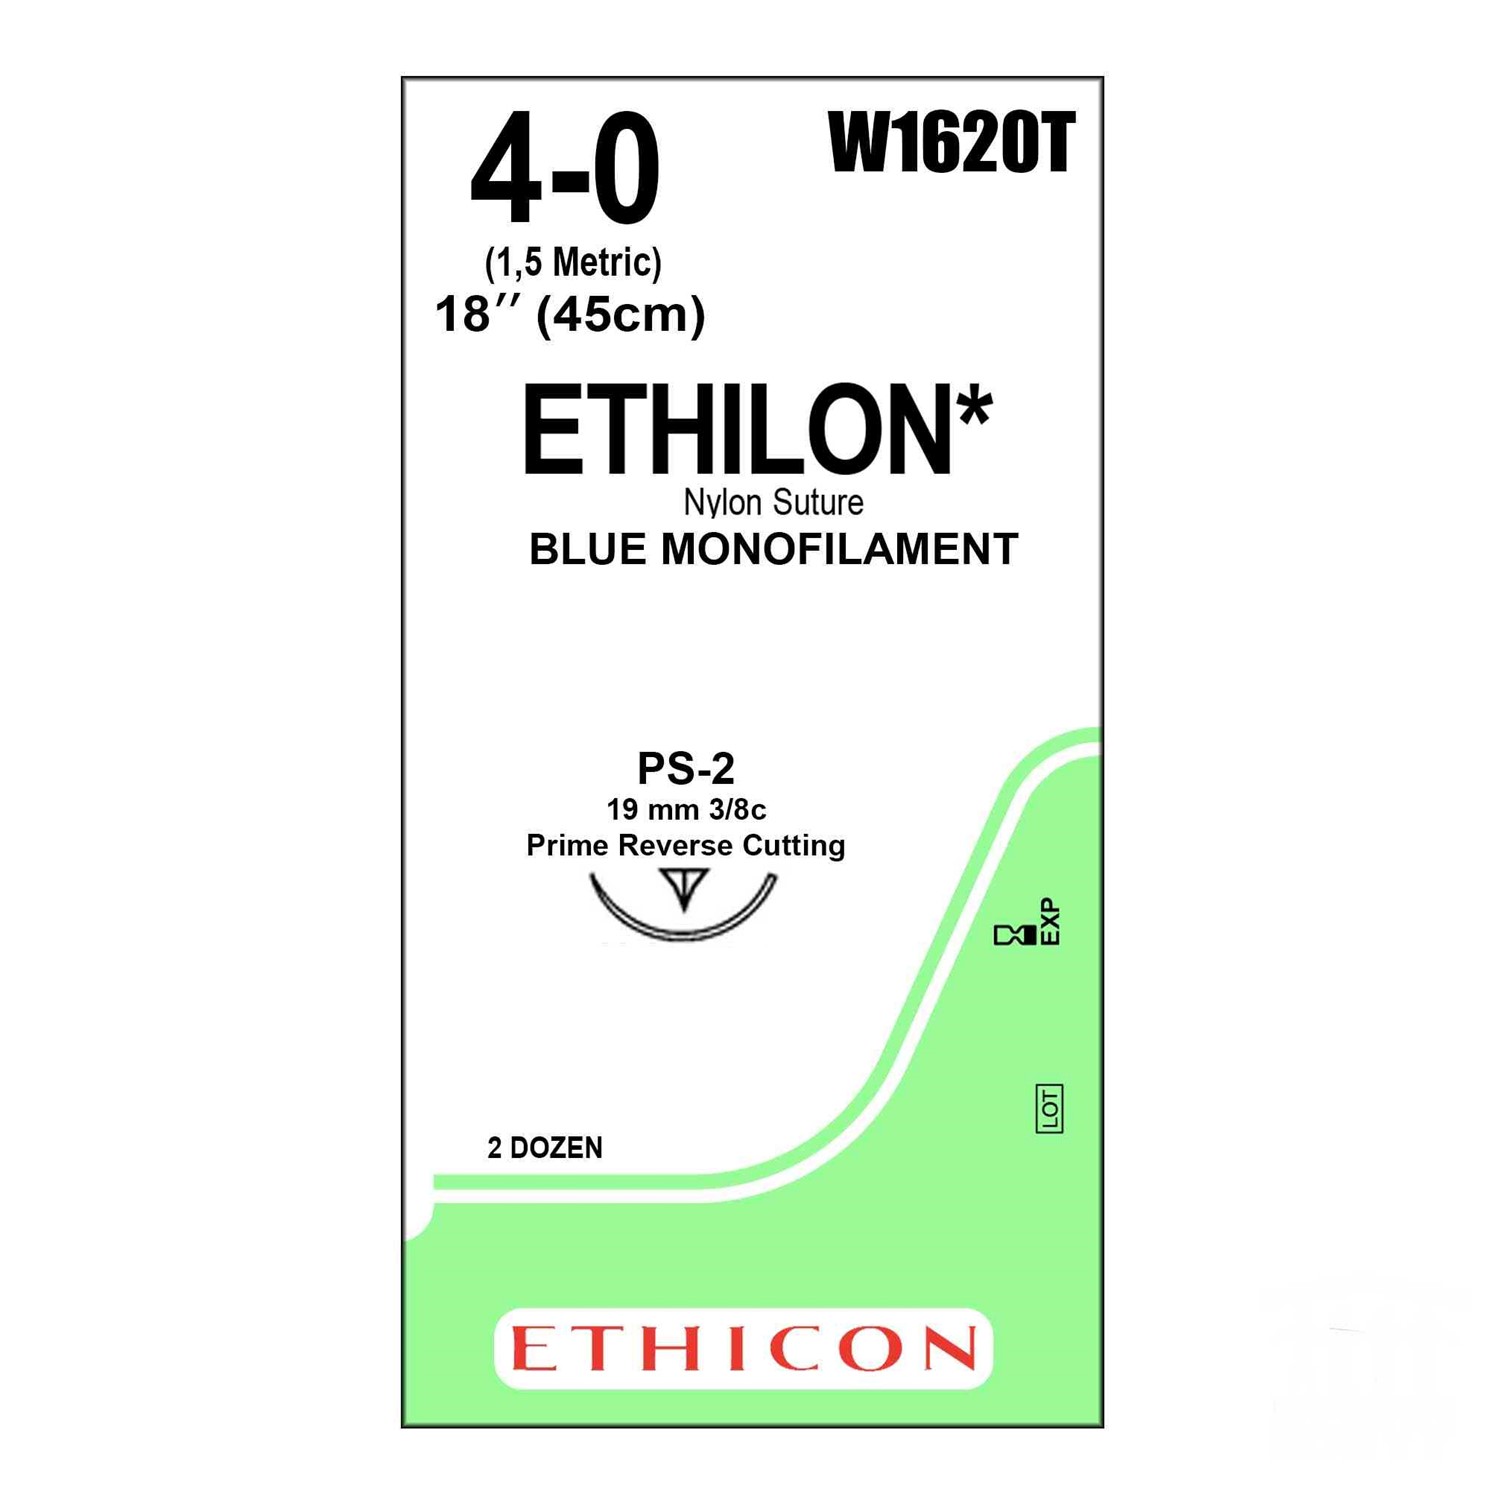 Ράμμα Ethilon No 4/0 με βελόνα 19mm Αντ. Κόπτουσα Πλαστικής P 3/8c, μήκος ράμματος 45cm